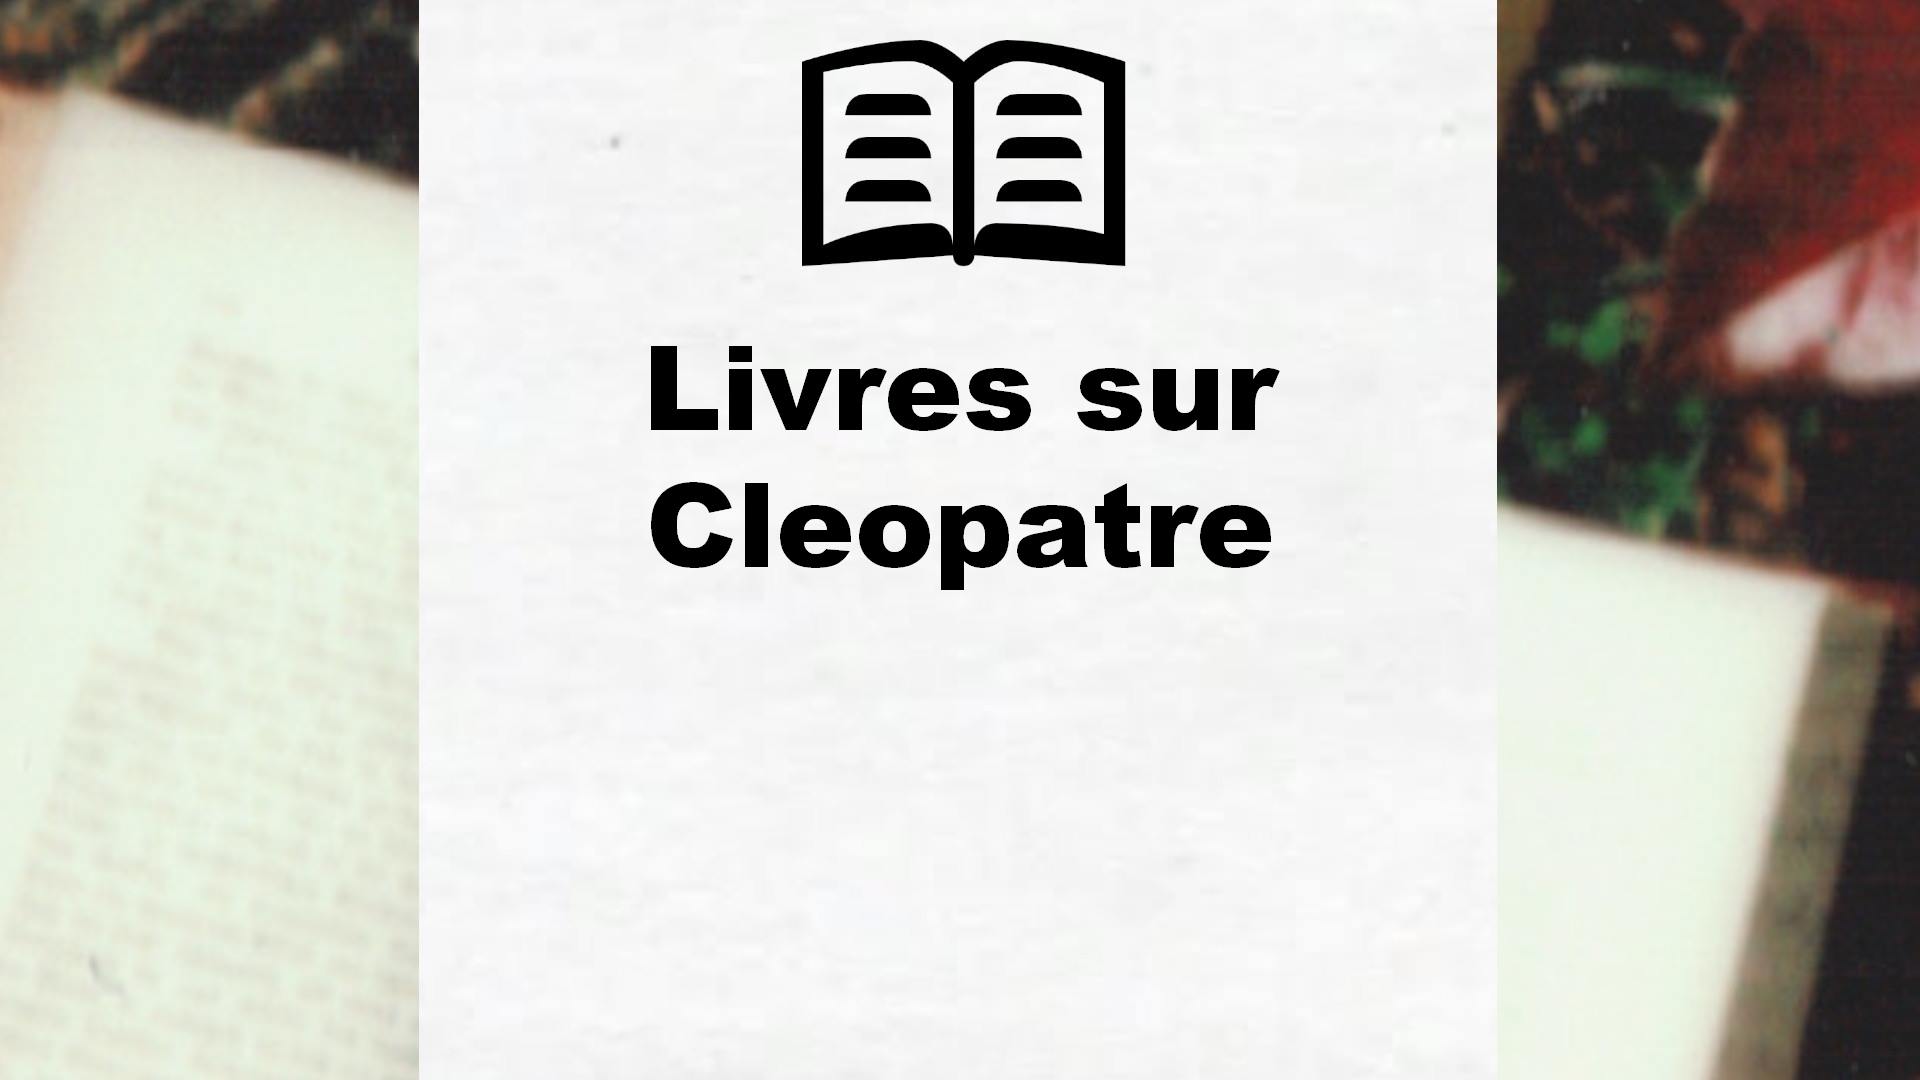 Livres sur Cleopatre